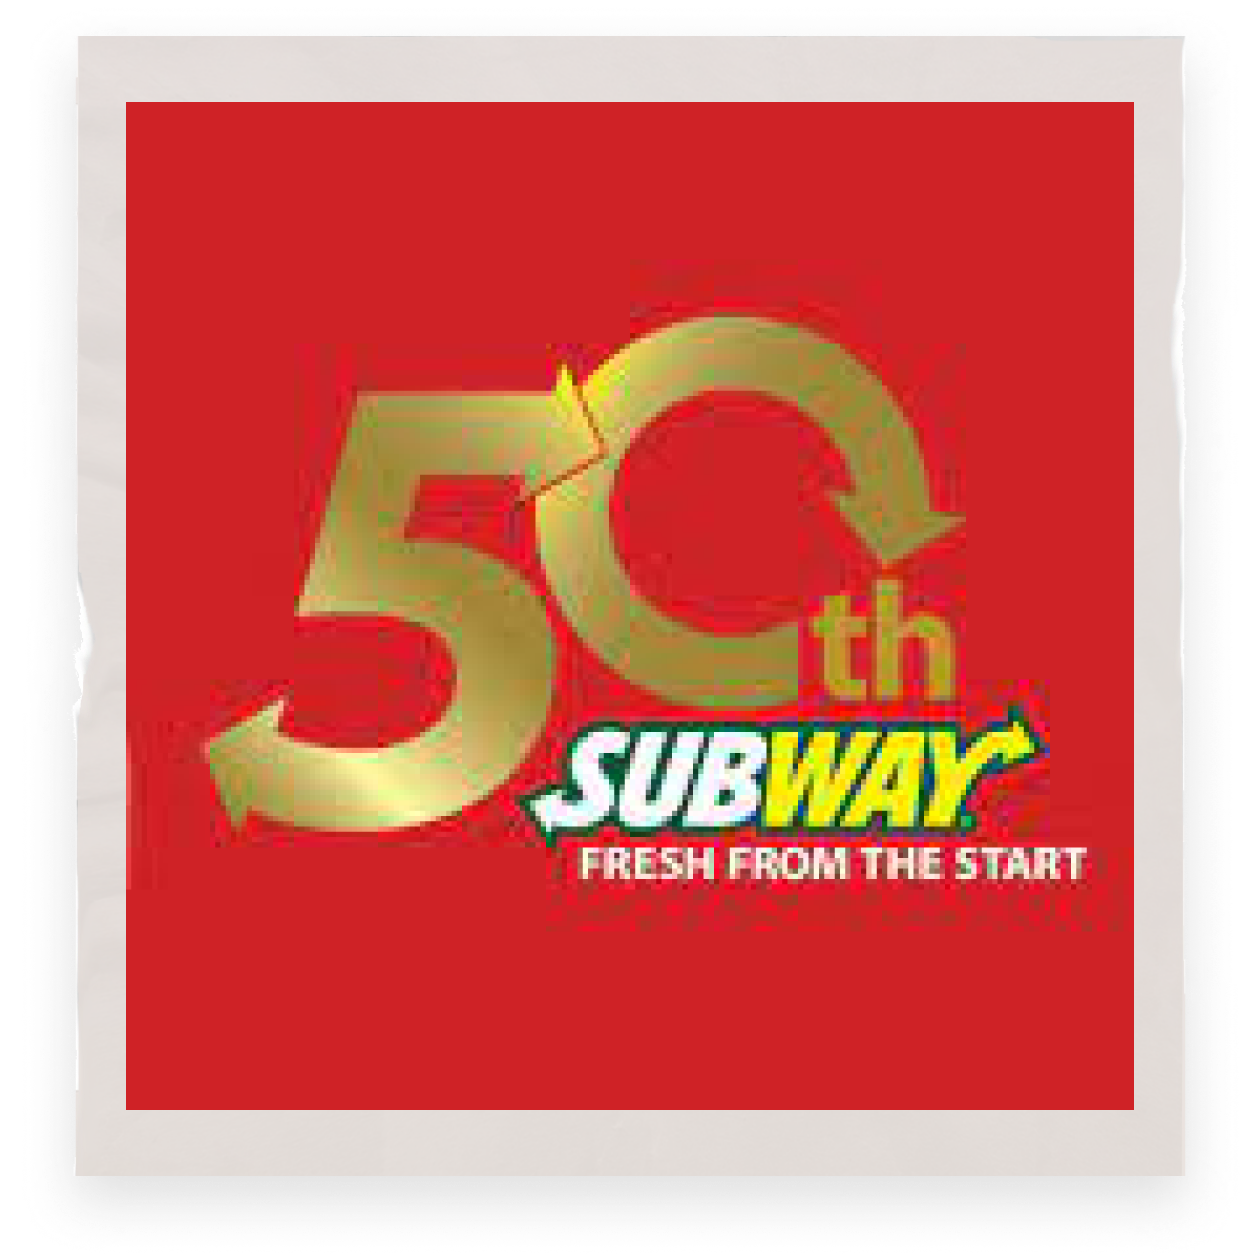 為了慶祝品牌成立50周年，賽百味?制作了巨型三明治，并打破最多人同時制作三明治的吉尼斯紀錄：1481人同時制作一個三明治。